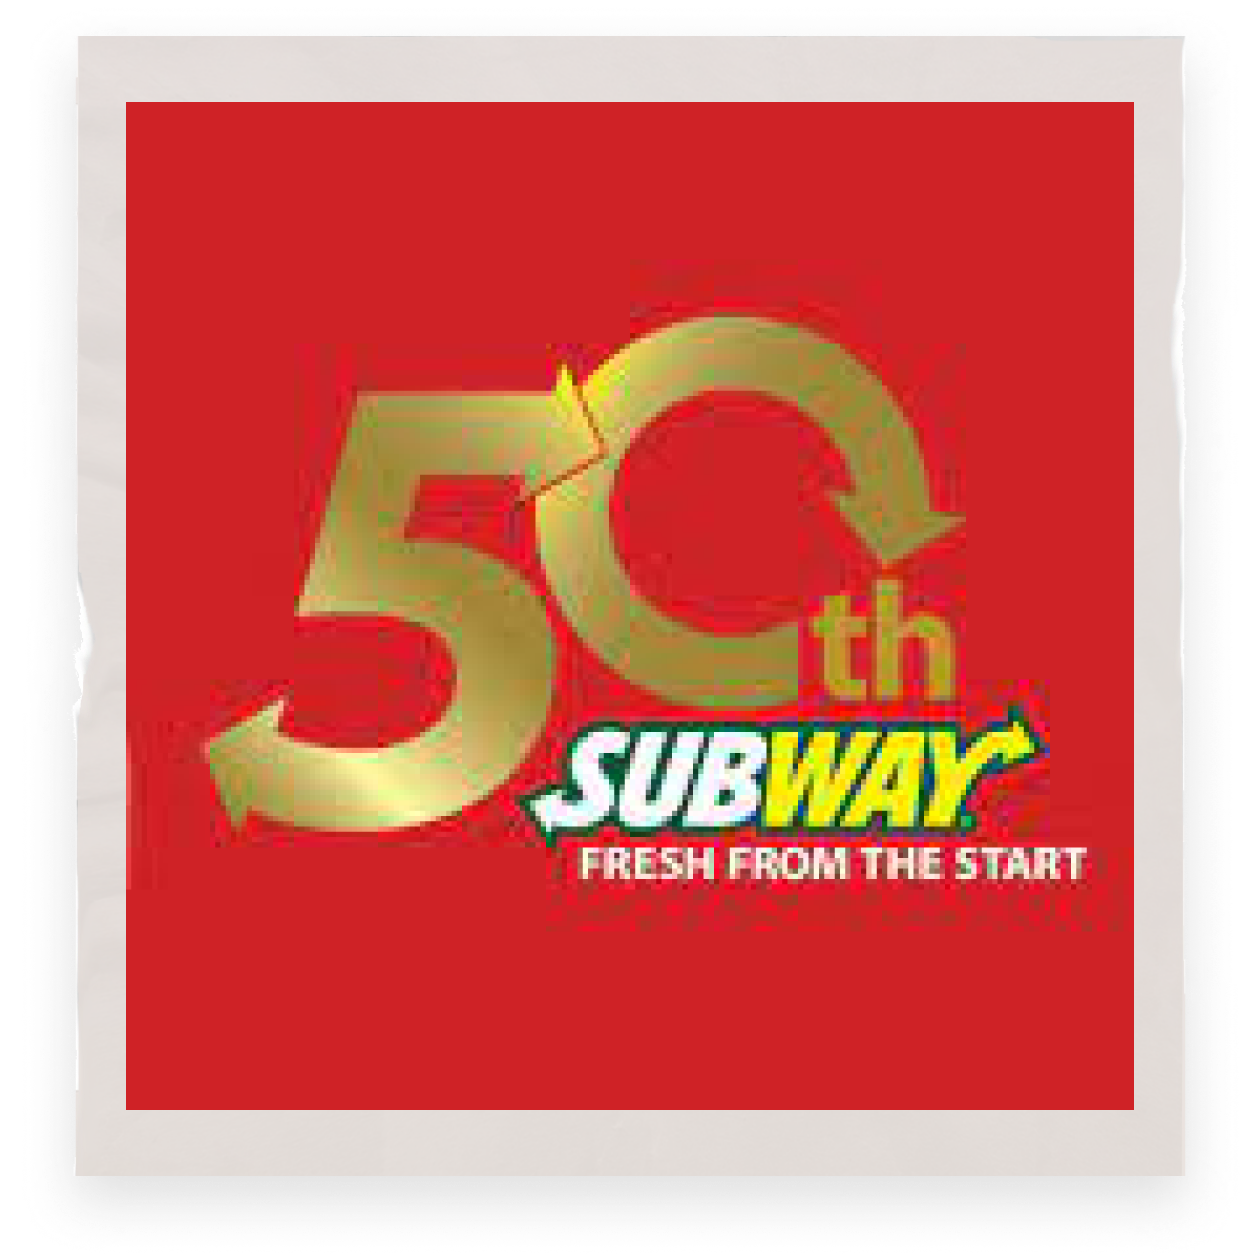 為了慶祝品牌成立50周年，賽百味?制作了巨型三明治，并打破最多人同時制作三明治的吉尼斯紀錄：1481人同時制作一個三明治。